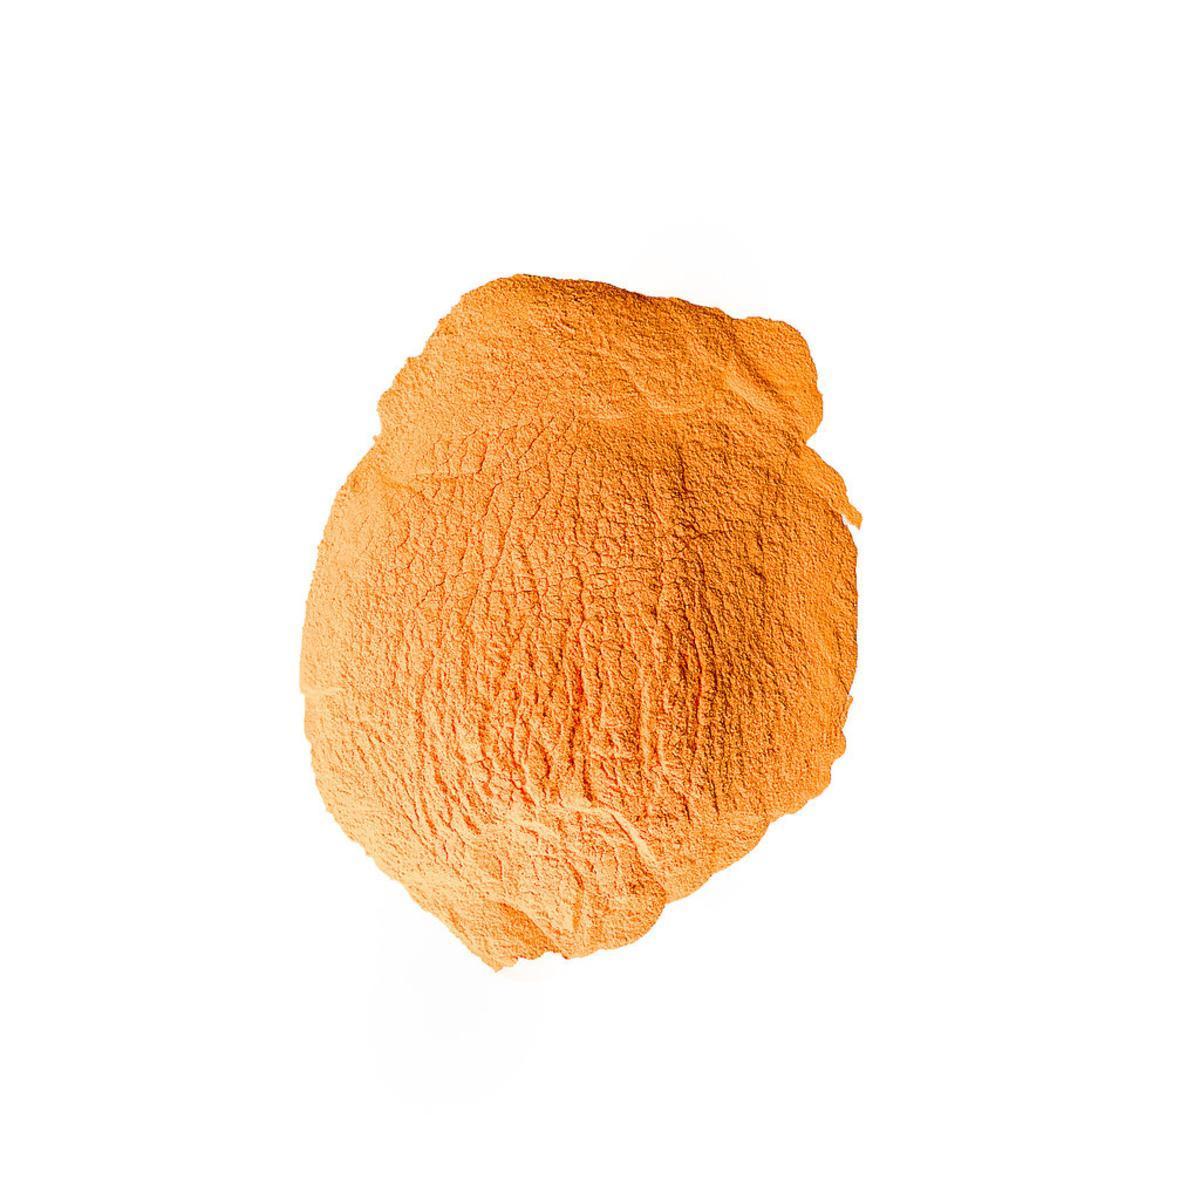 Poudre colorée Holi - 70 g - Orange